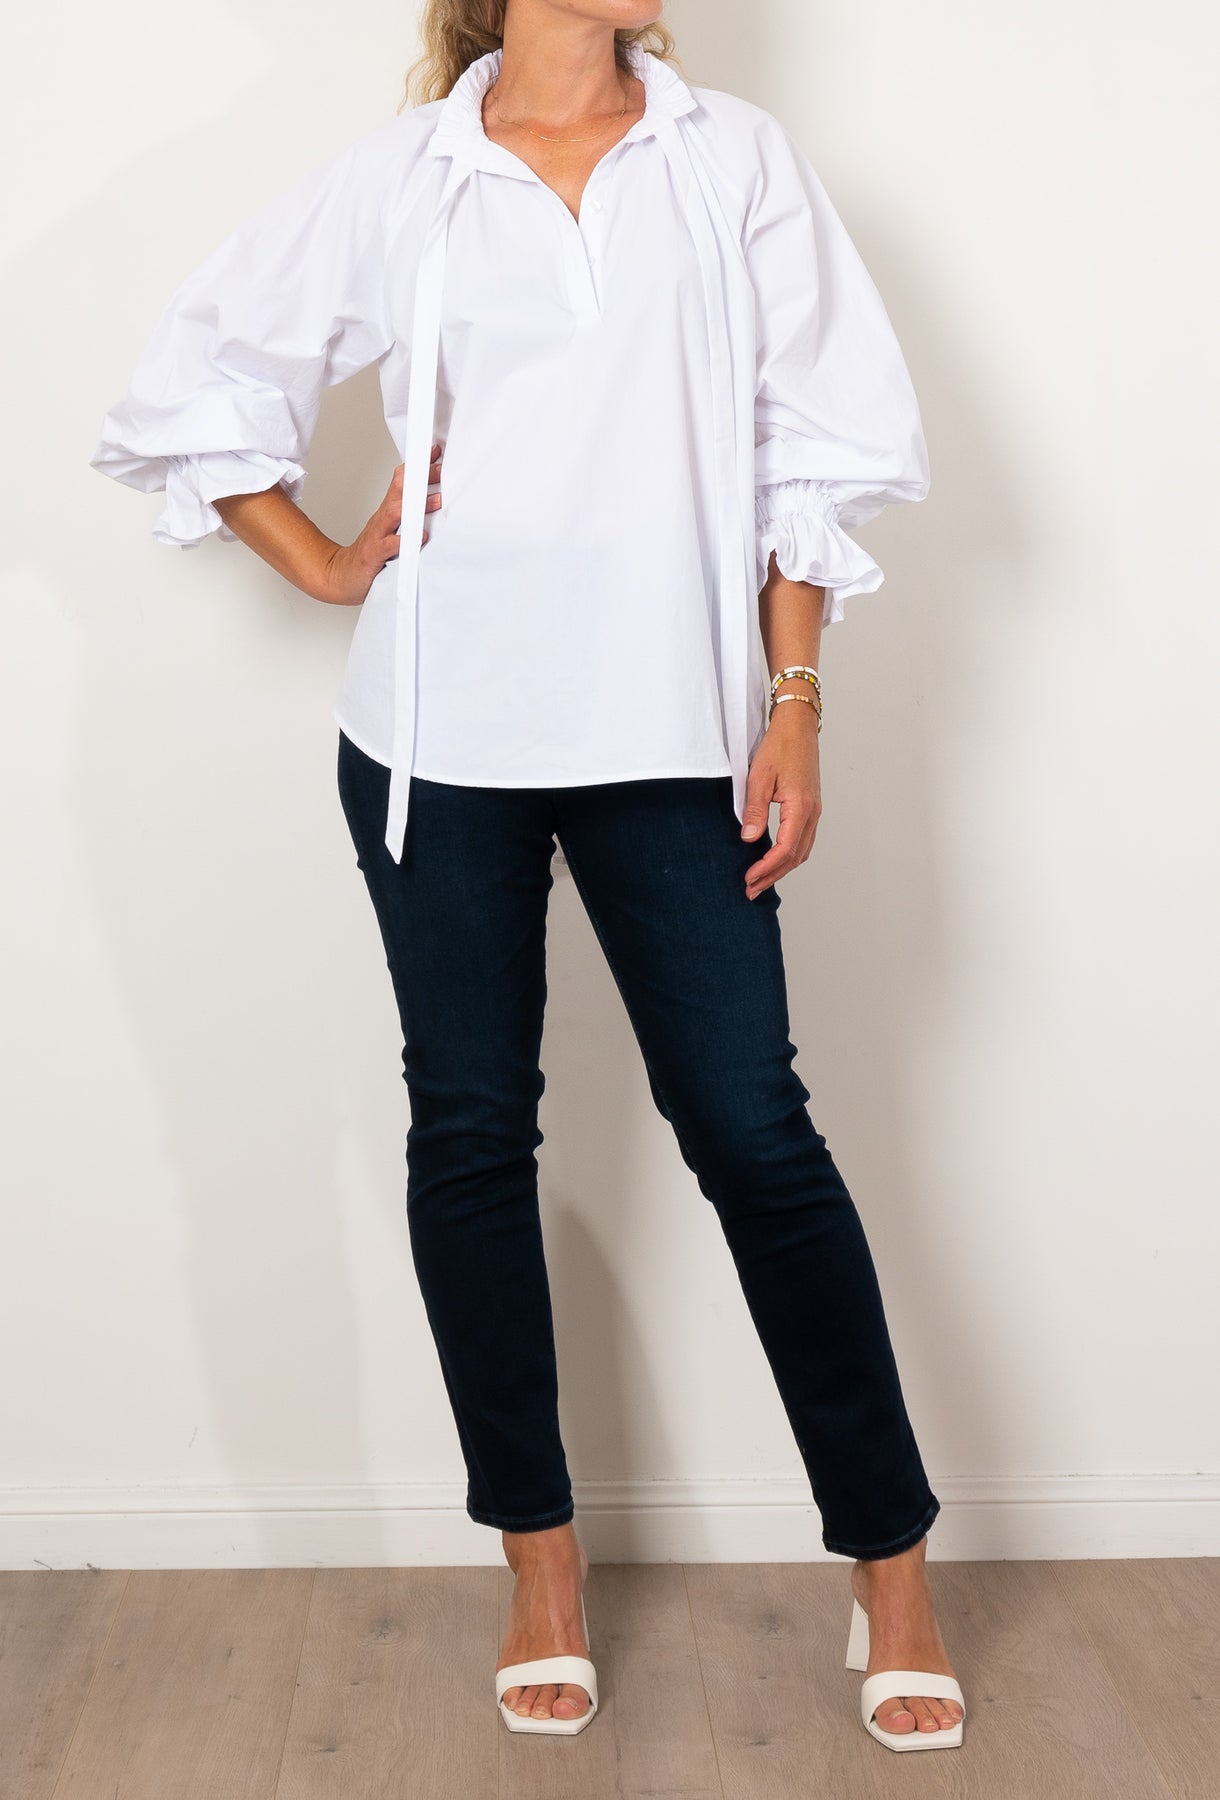 Alexandra Danill Shirt White